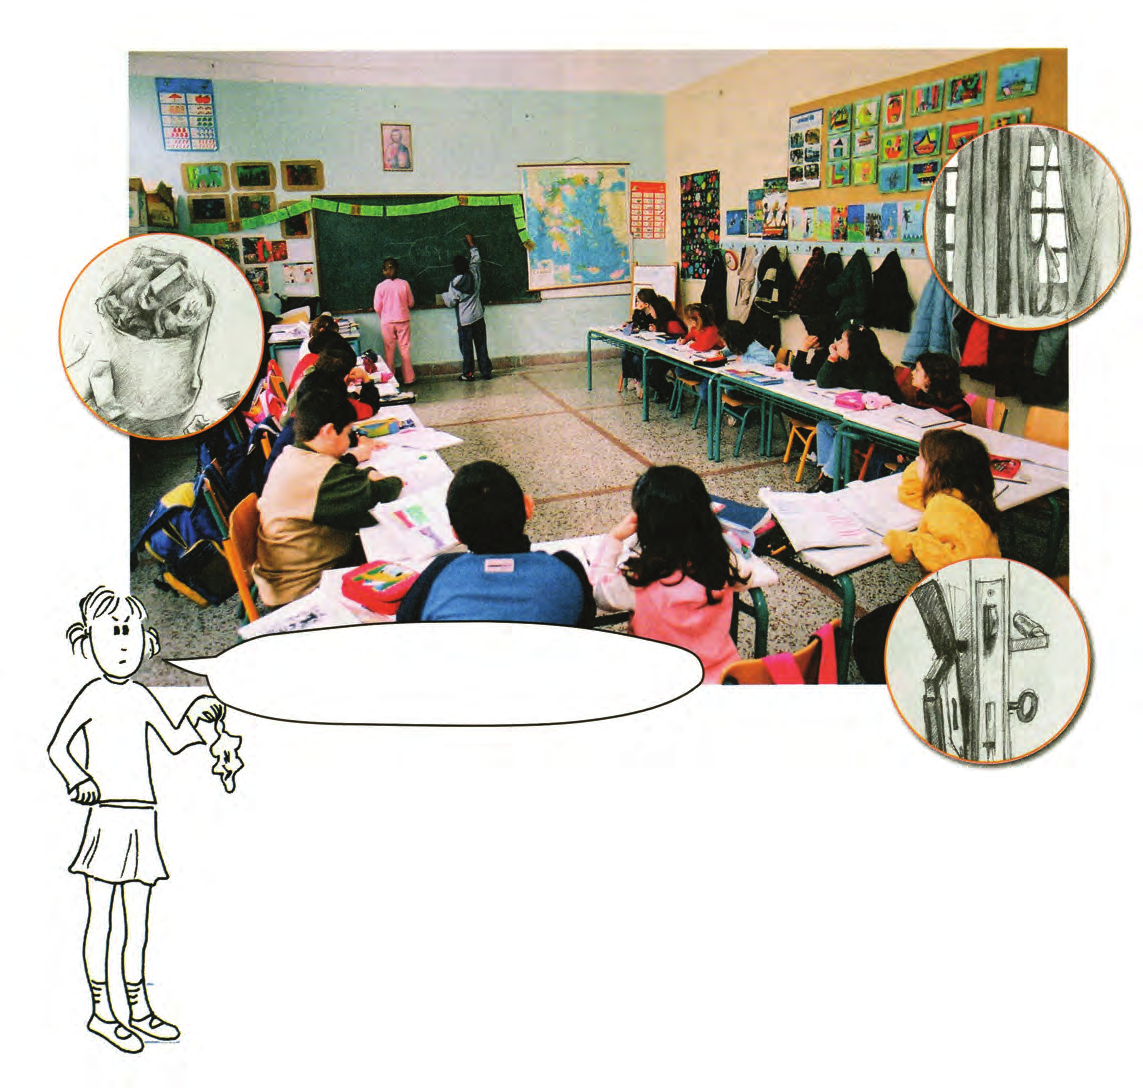 1.3 Το περιβάλλον του σχολείου μου Οι τάξεις Τι θα ήθελες να είναι διαφορετικό στην τάξη σου και γιατί; ΠΕΡΙΓΡΆΨΤΕ την τάξη της εικόνας.